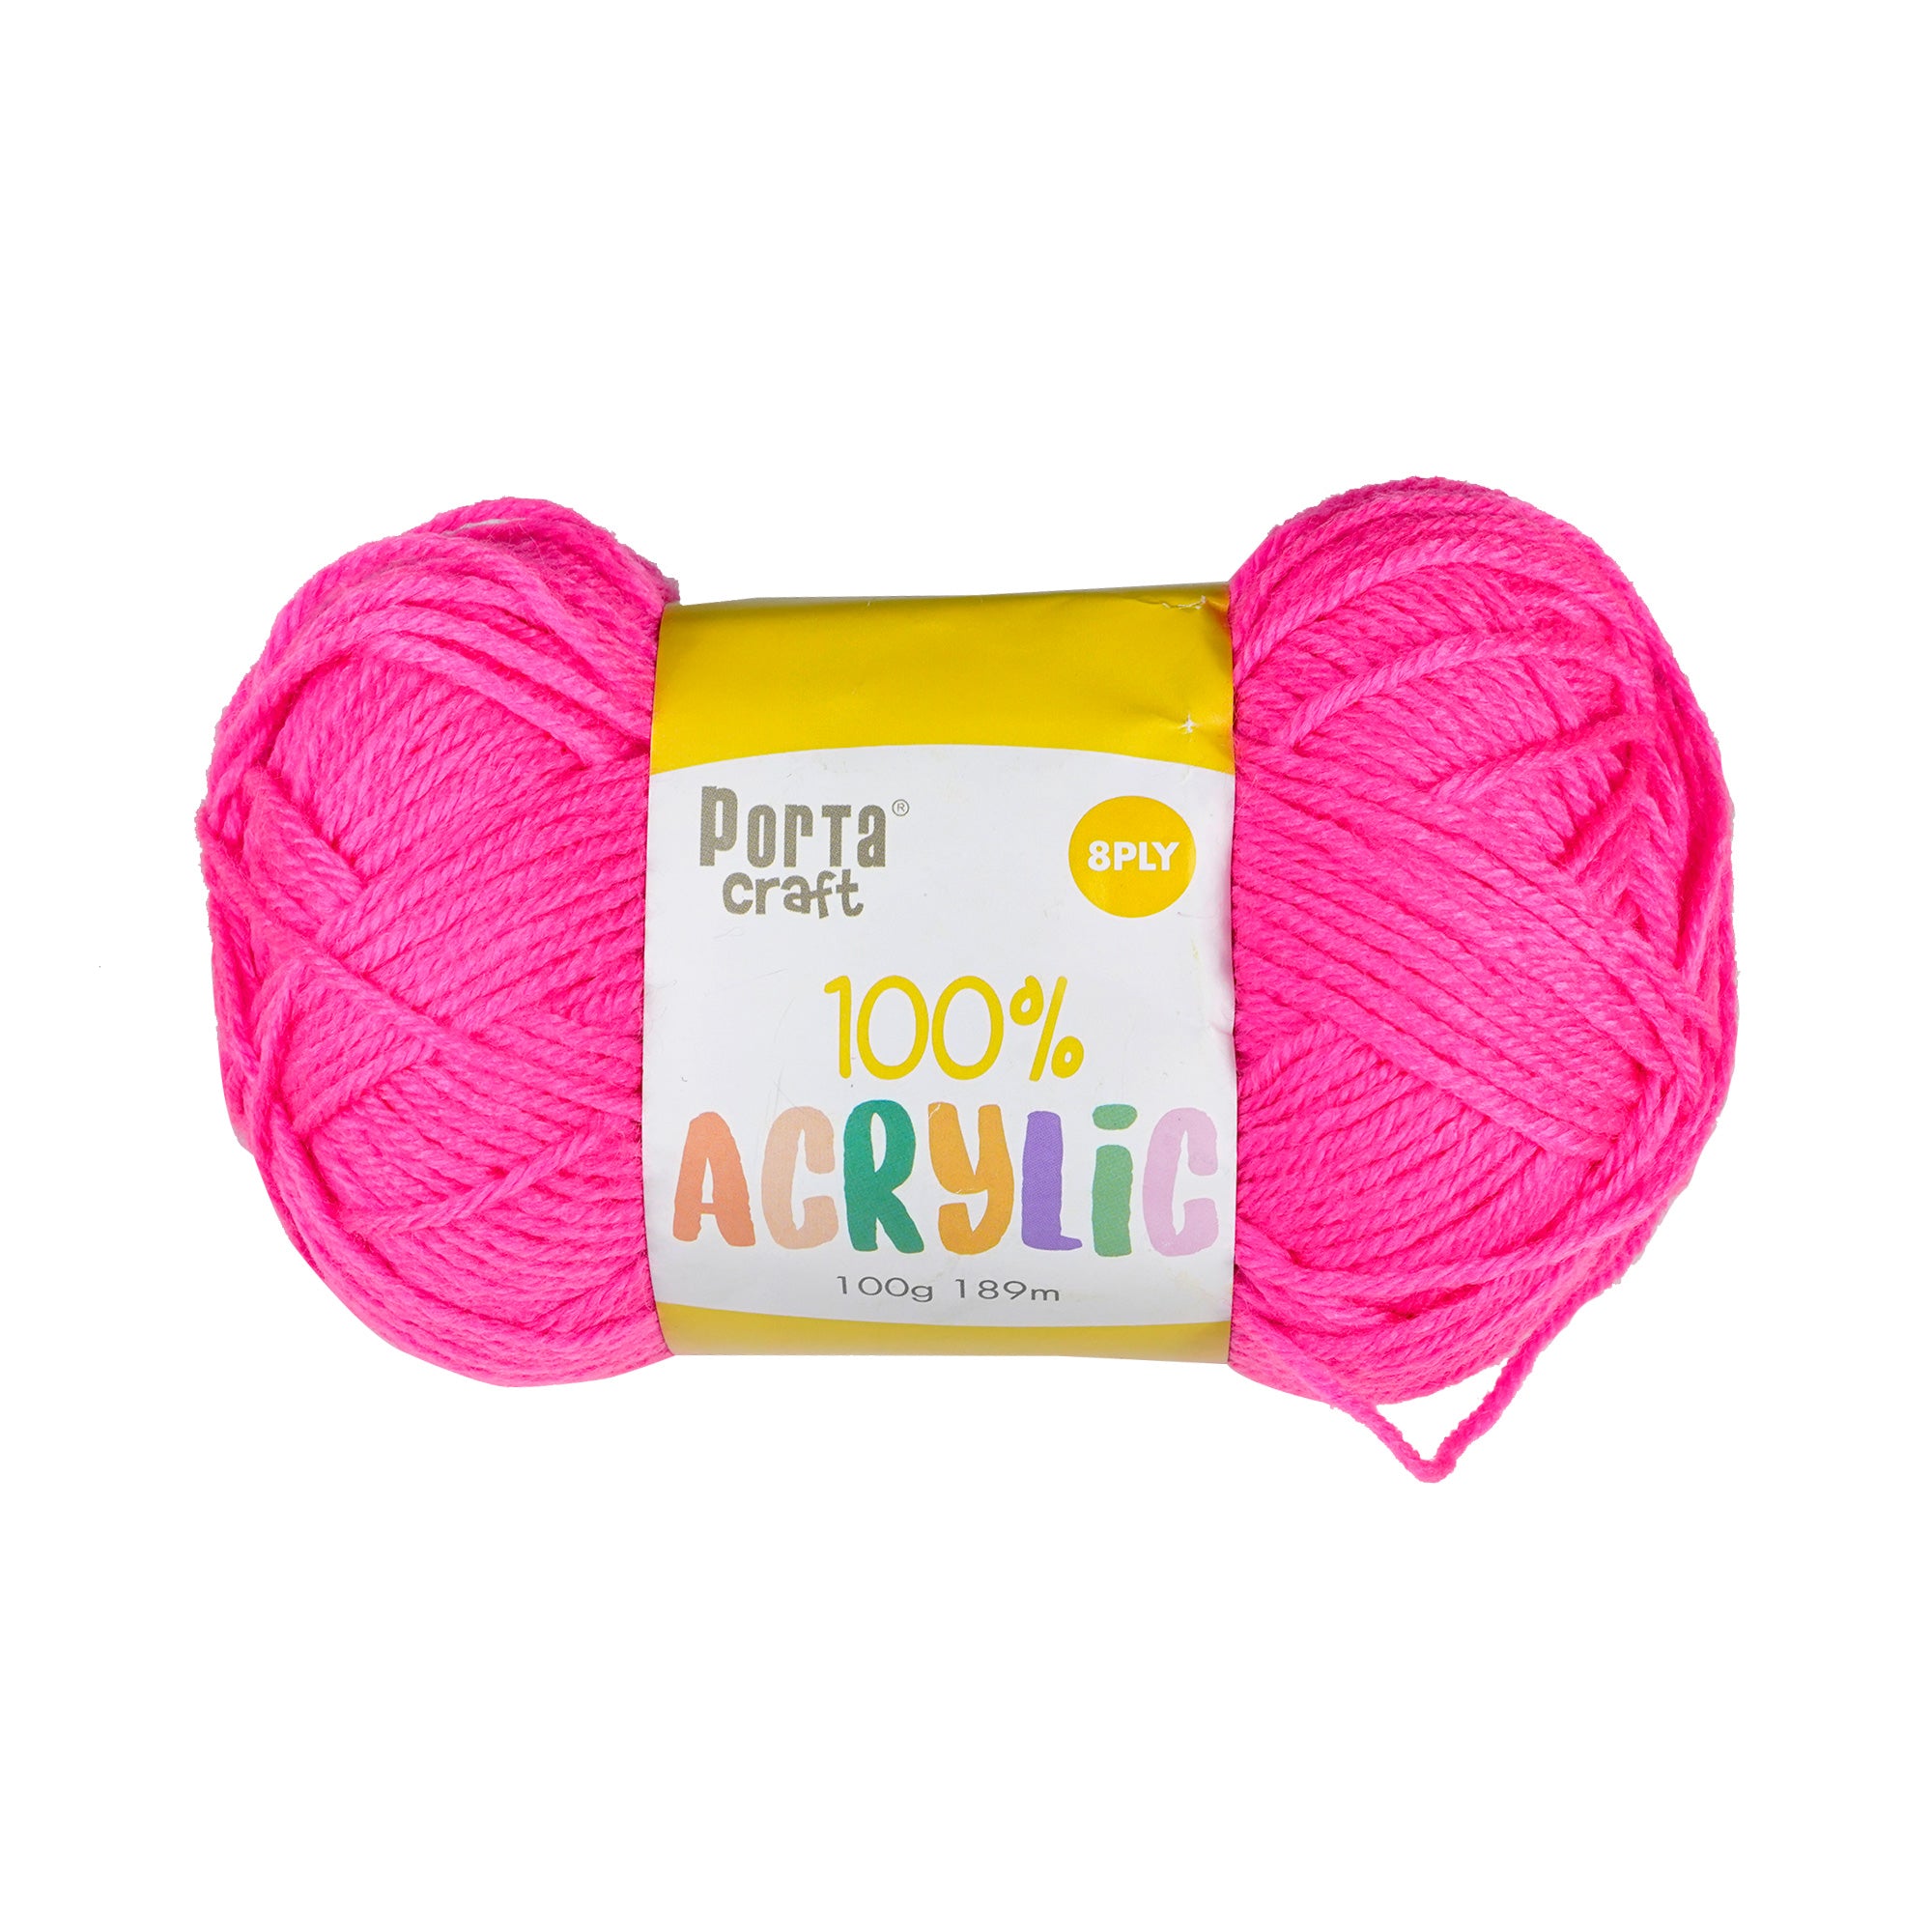 Porta Craft Acrylic Yarn 100% 100gm 189m 8ply Hi Viz Pink – Itsy Bitsy